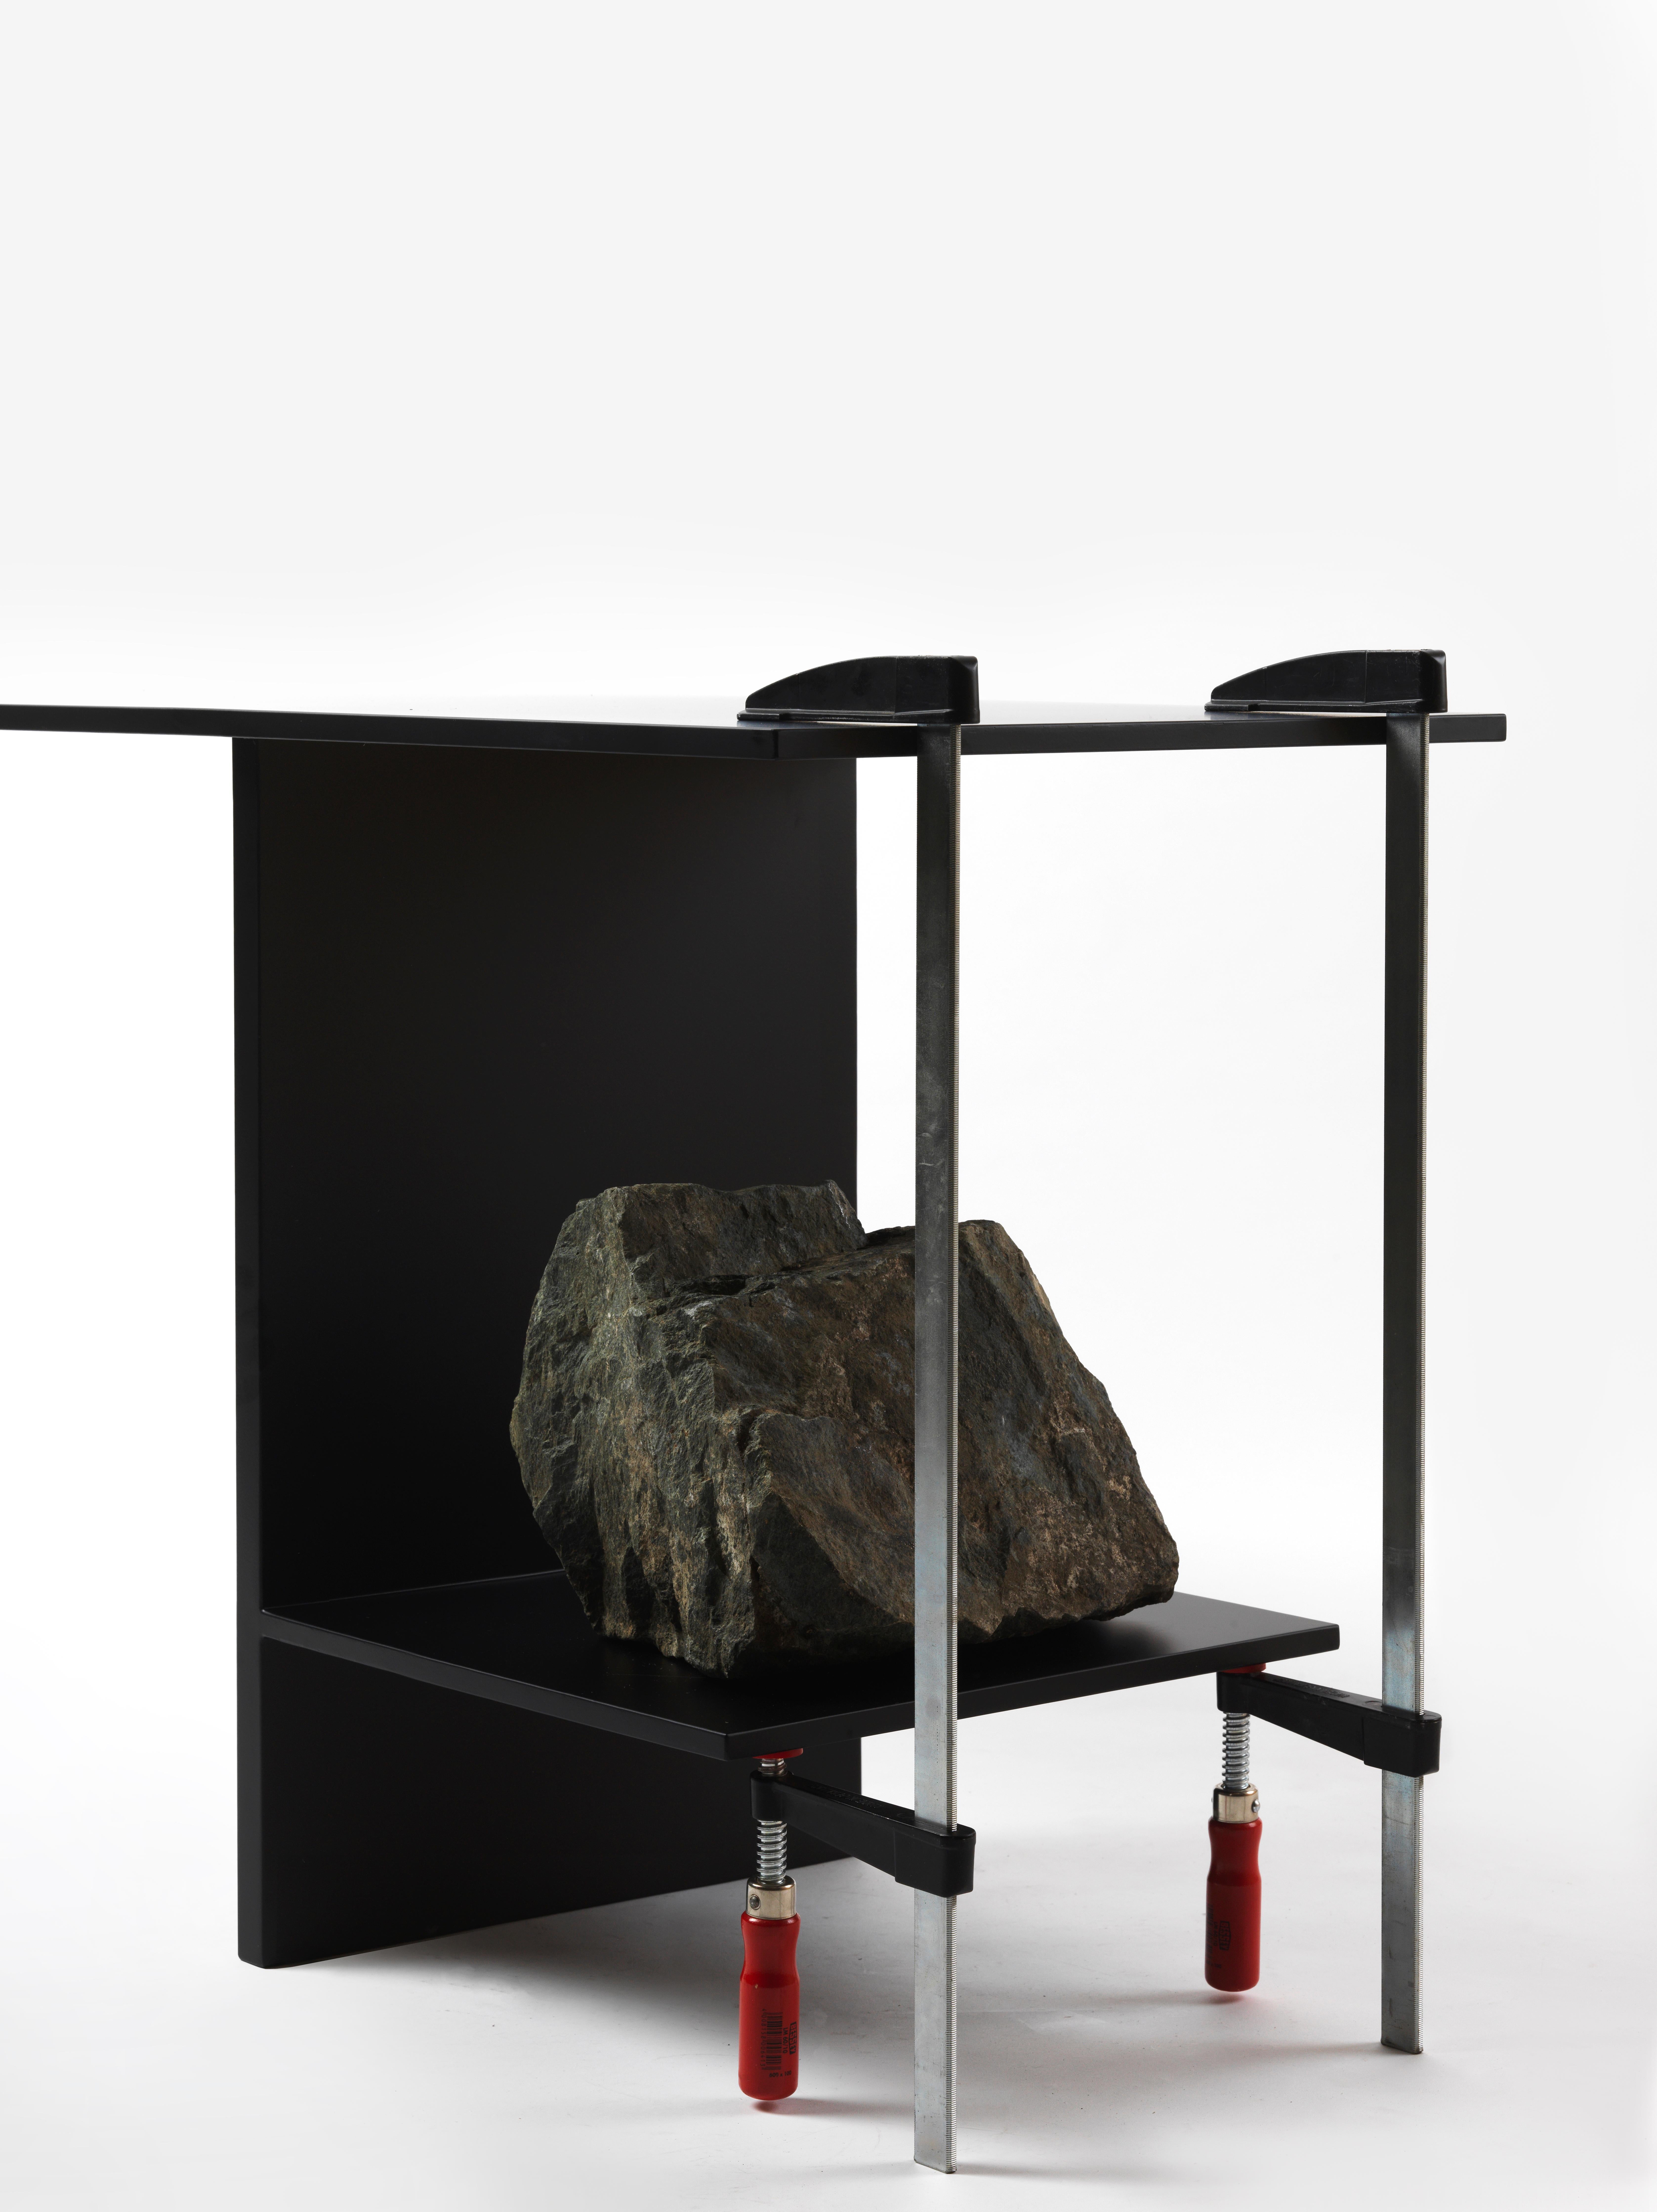 Table d'équilibre de Lee Sisan, 2019
Dimensions : L 130 x P 45 x H 65 cm
Matériaux : Acier revêtu de poudre, pierre naturelle.

Chaque pièce est fabriquée sur commande et utilise des pierres naturelles. Il faut donc s'attendre à une certaine